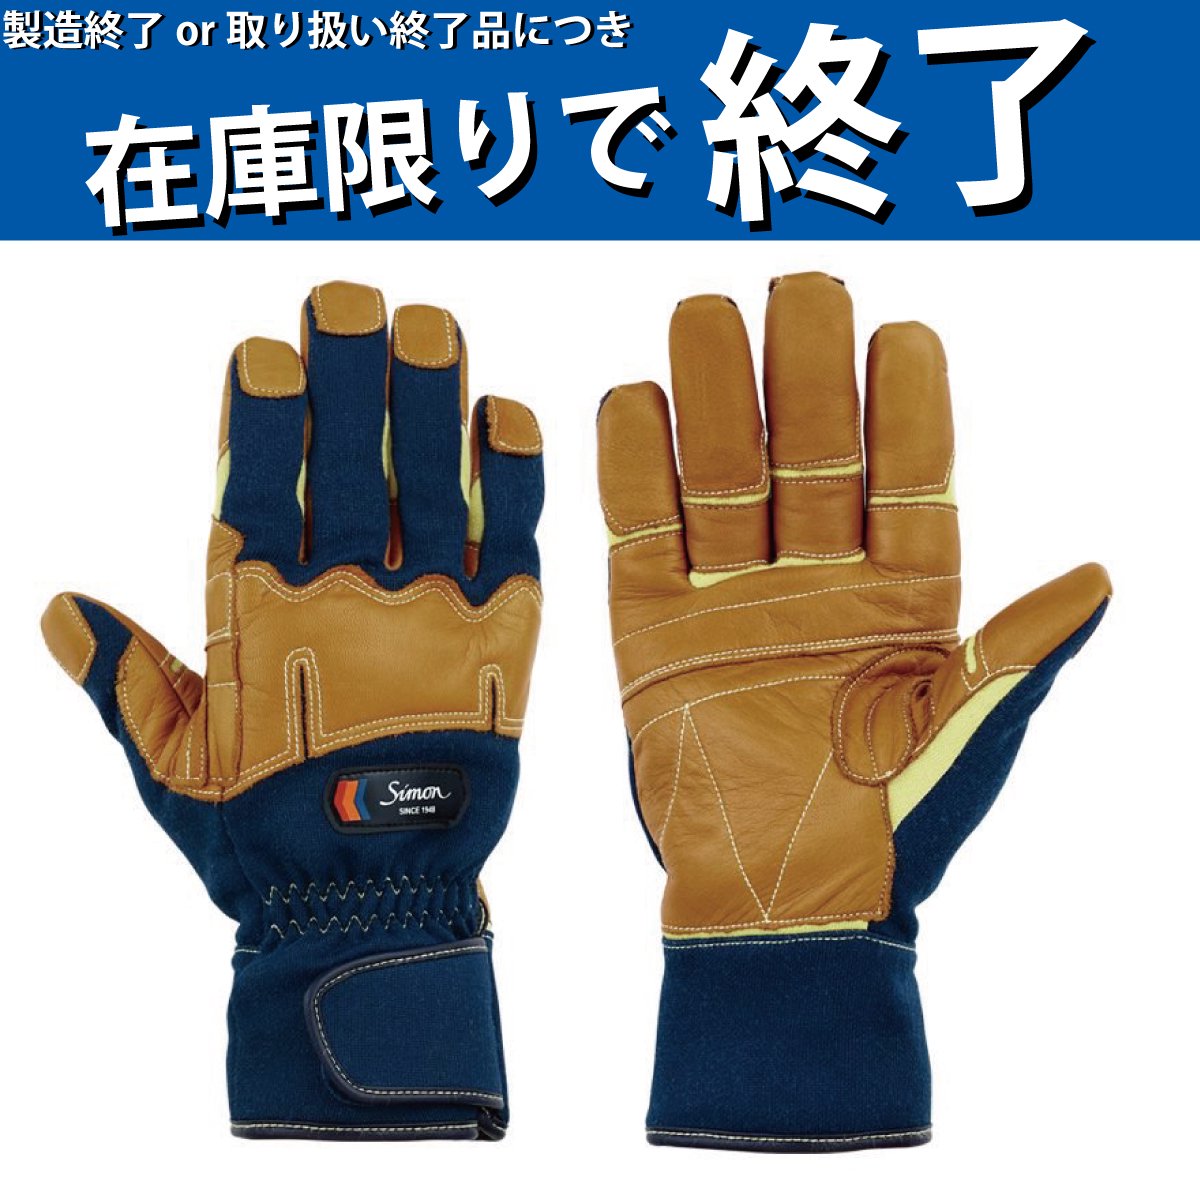 マーケット シモン 災害活動用保護手袋 アラミド繊維手袋 KG-180 LL